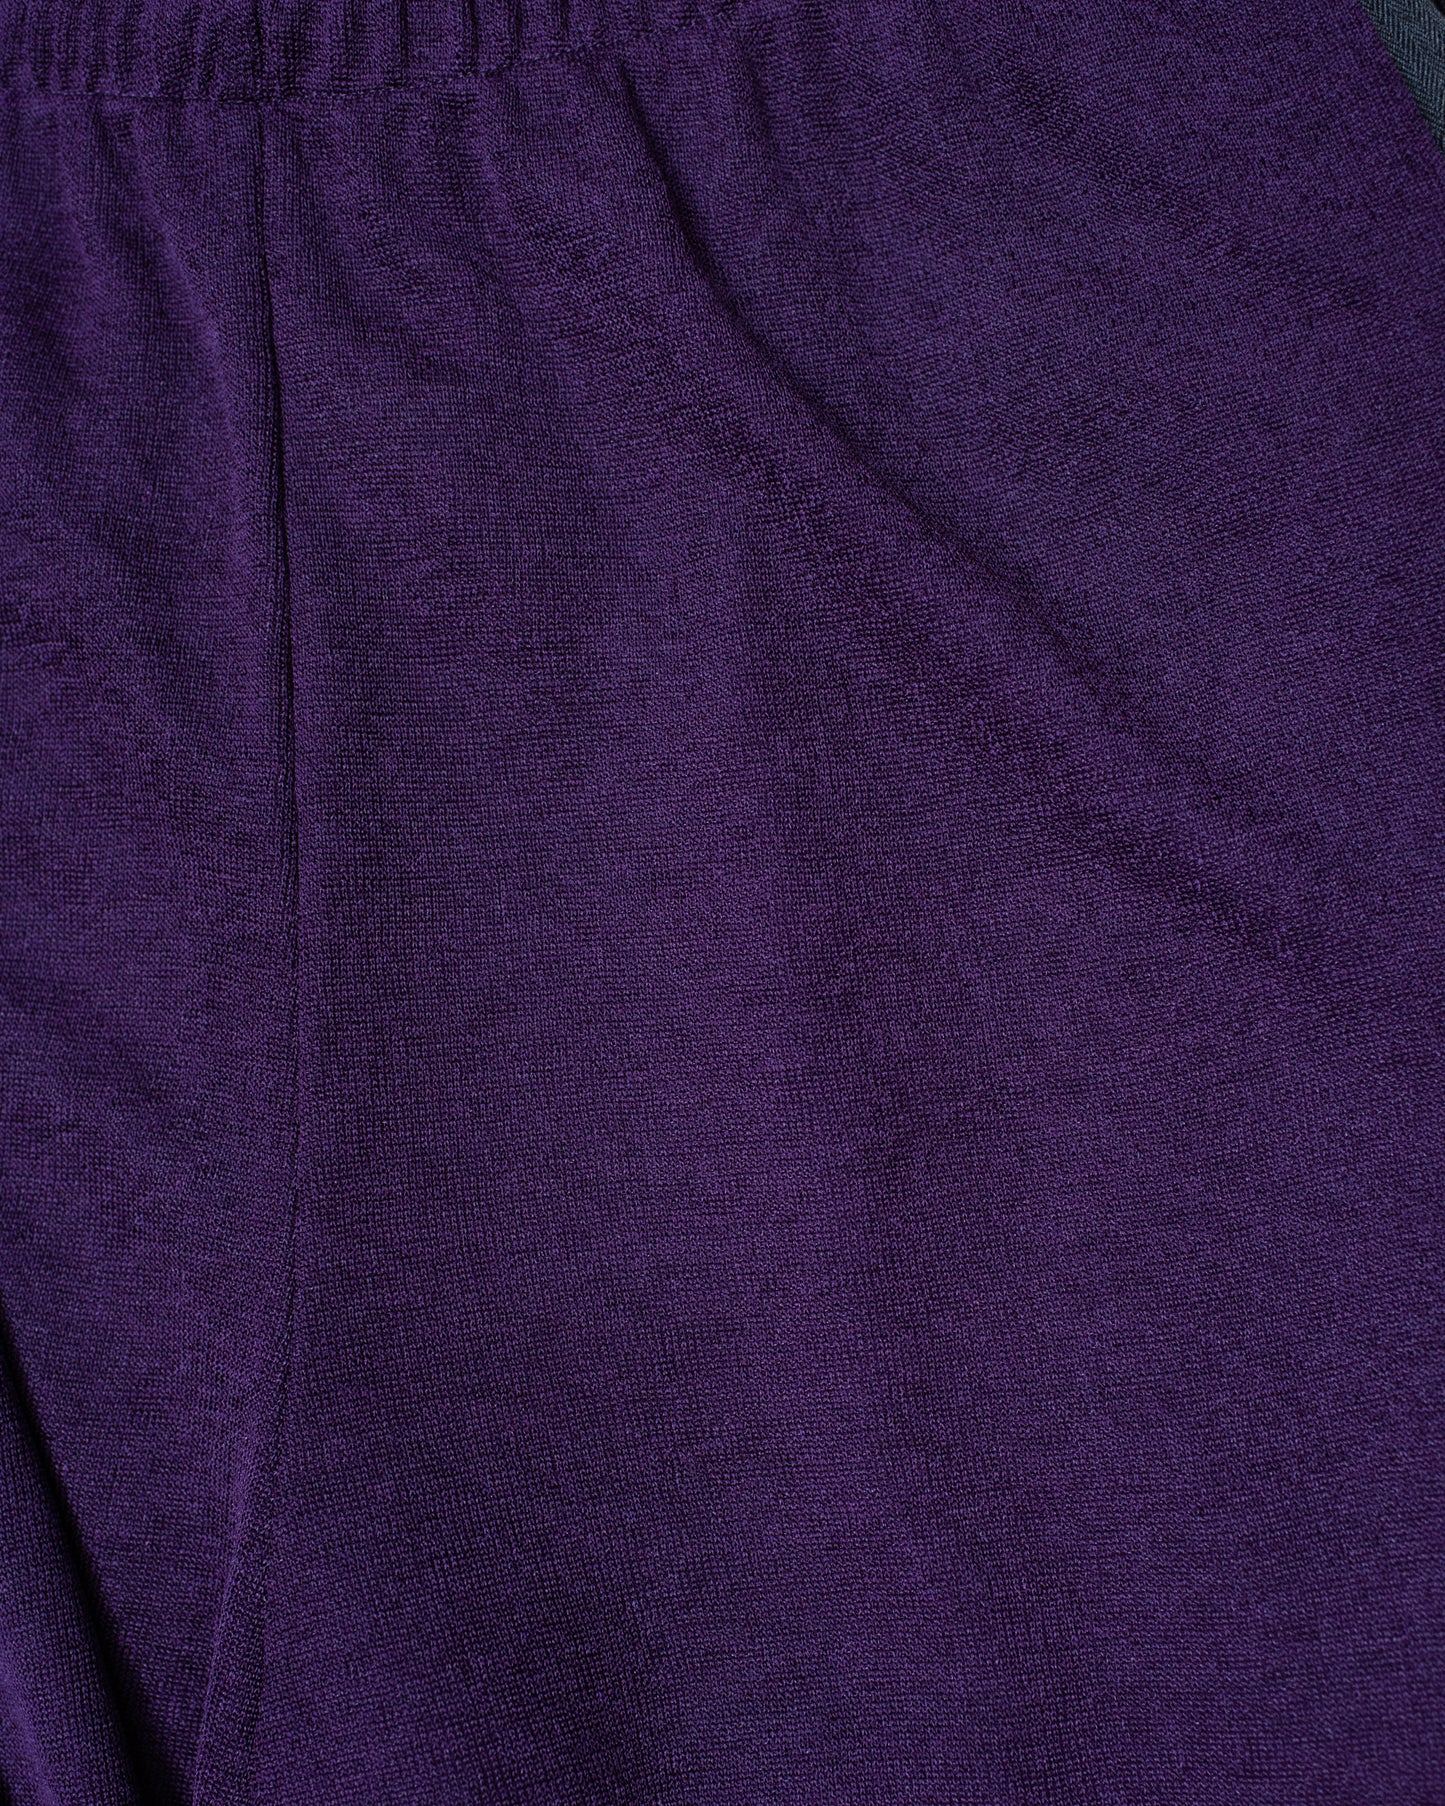 Vintage Purple Knit Pants (M/L)